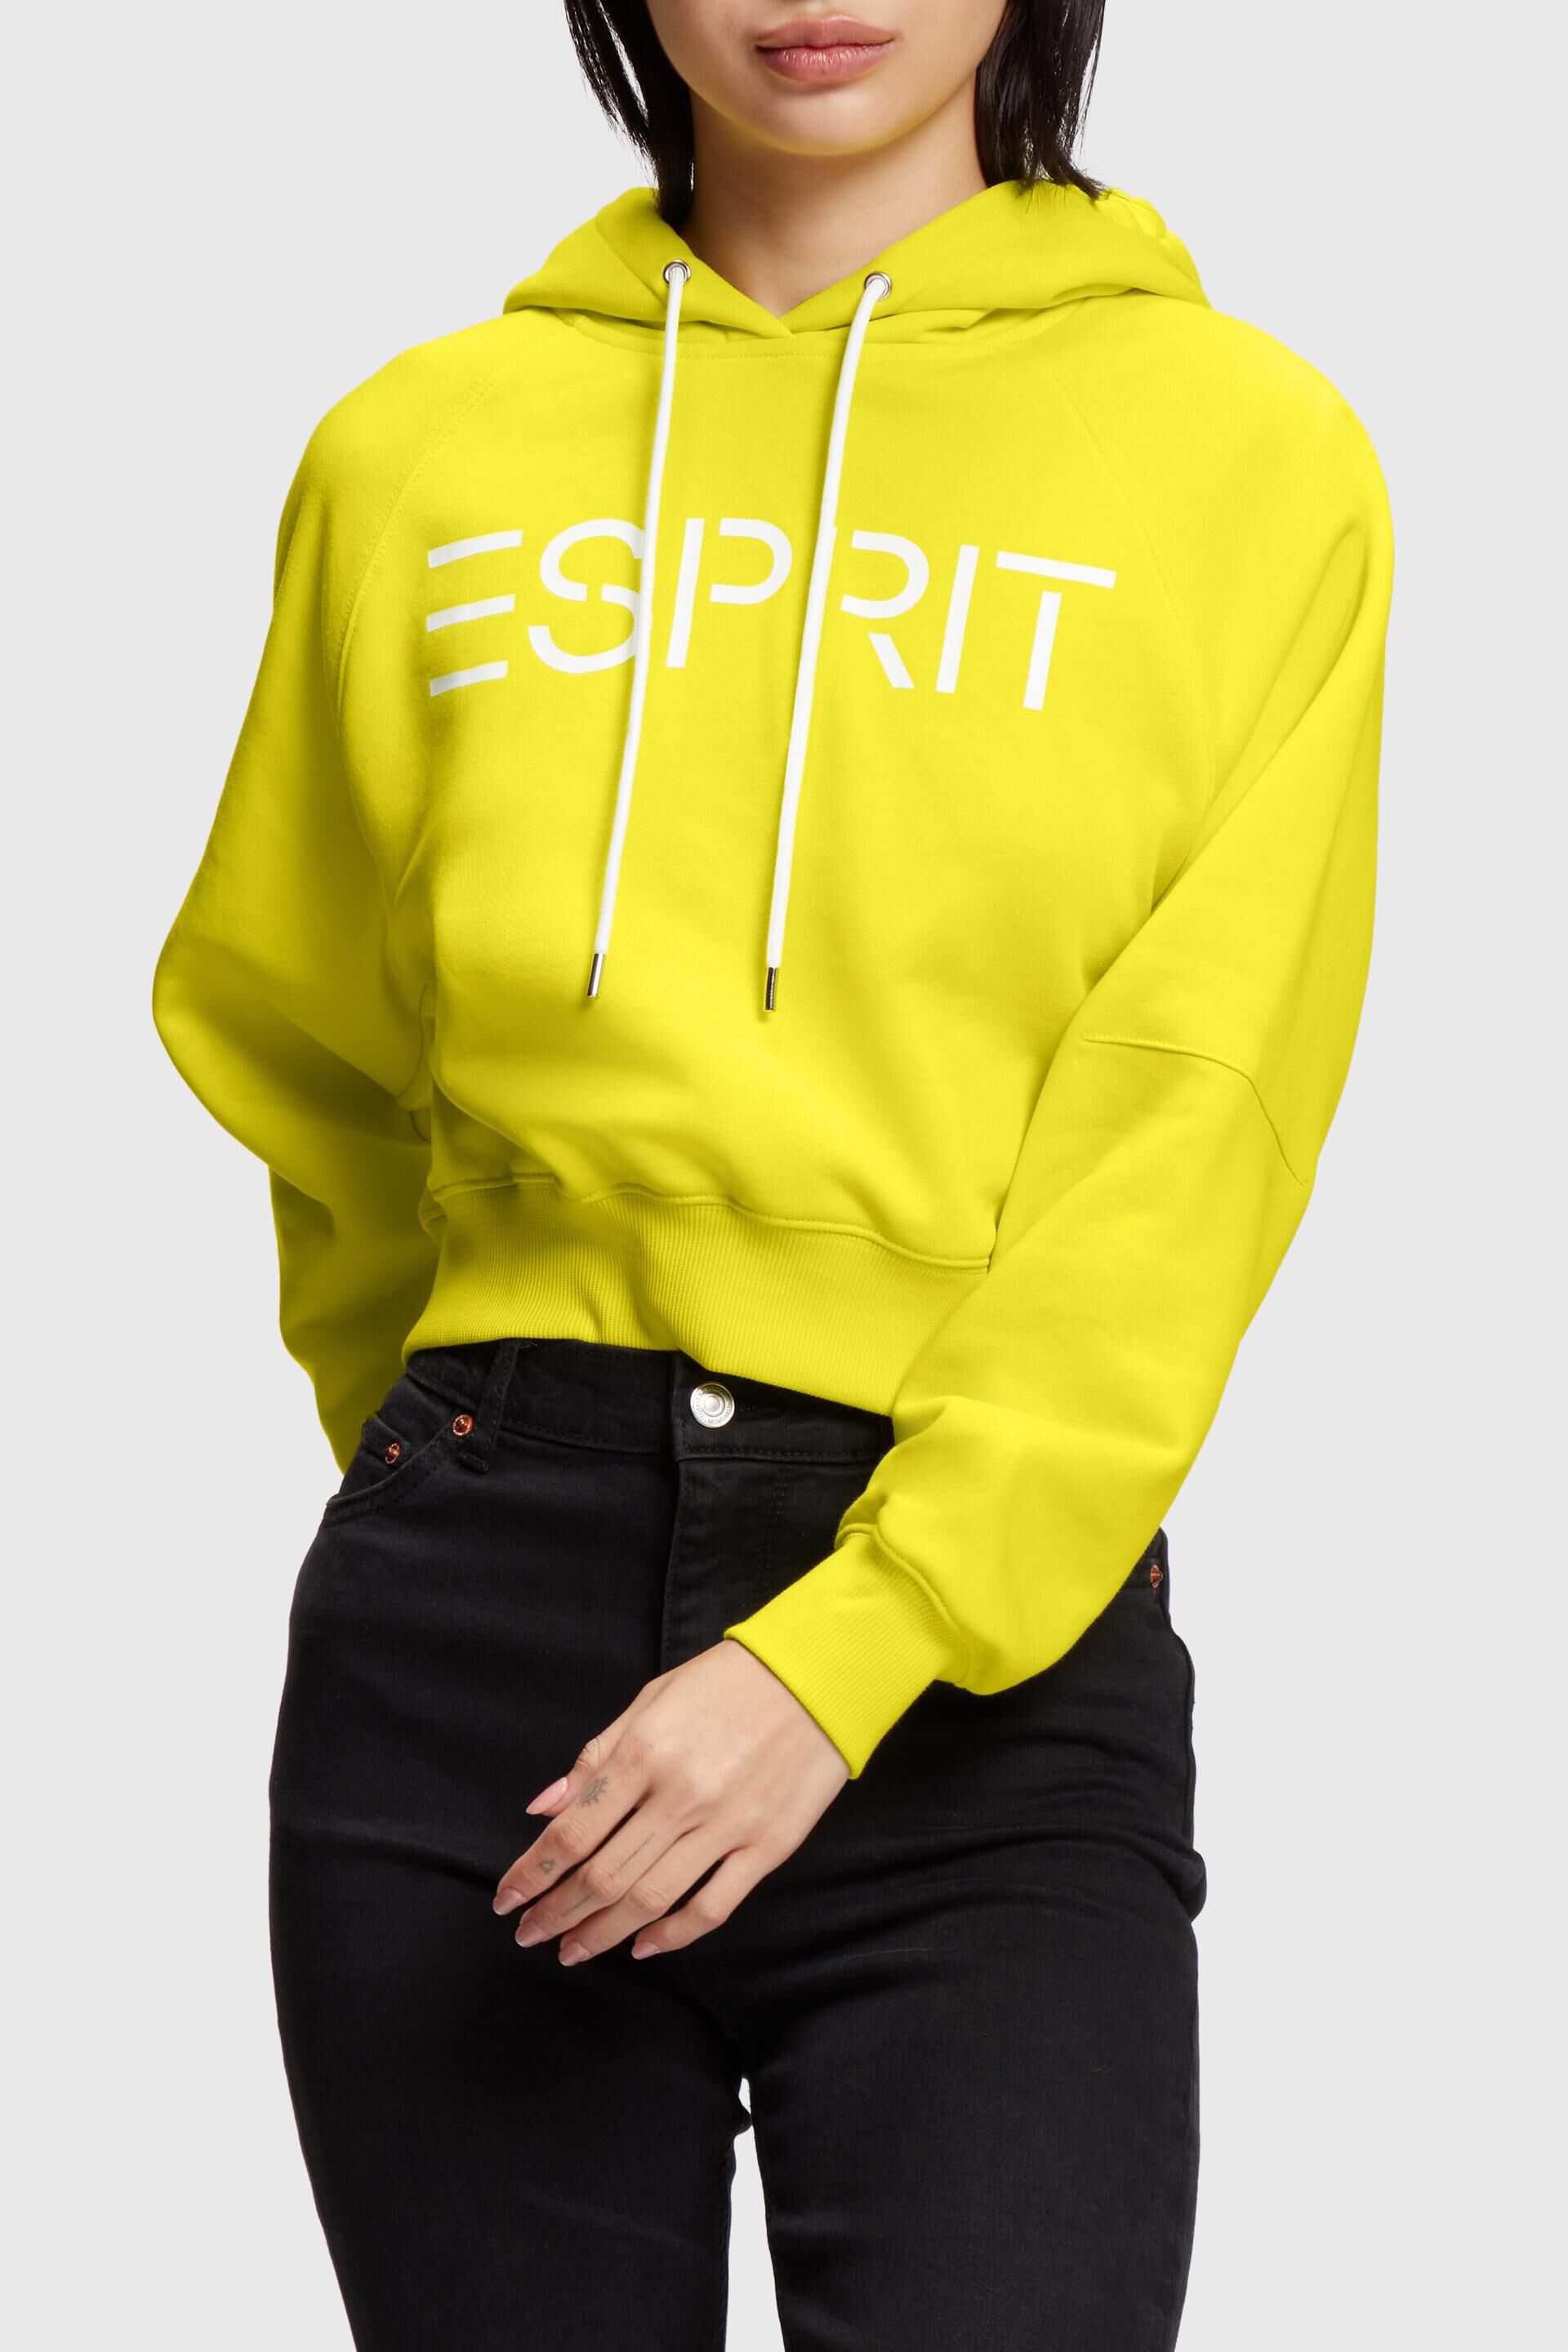 Esprit hoodie logo Cropped